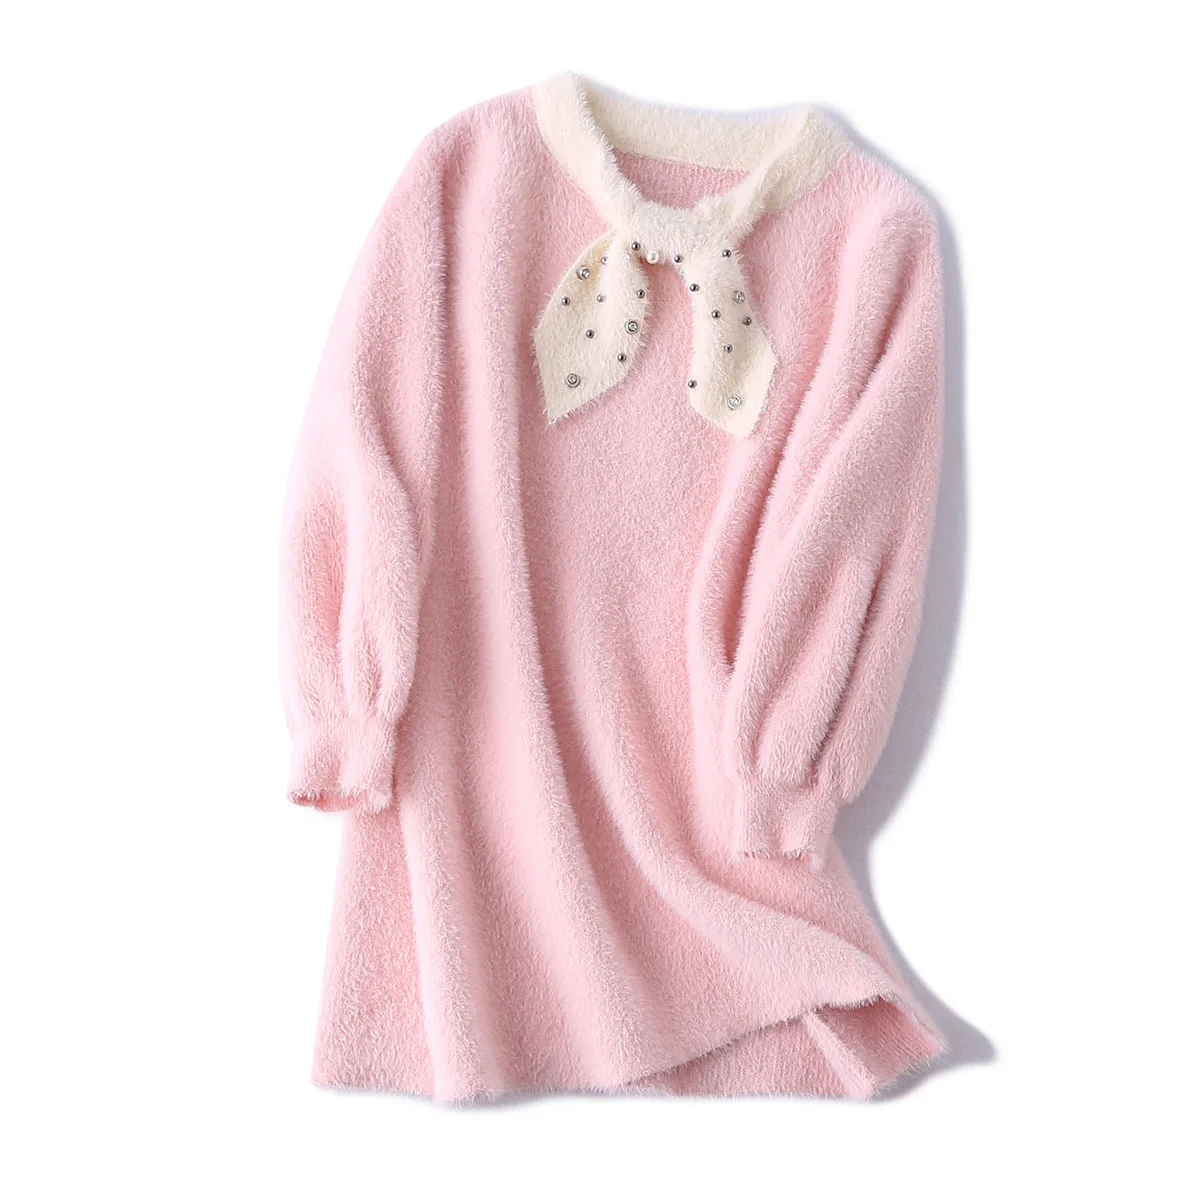 Новые зимние свитера для девочек модные свитера Одежда для детей 4-14 лет - Цвет: Розовый